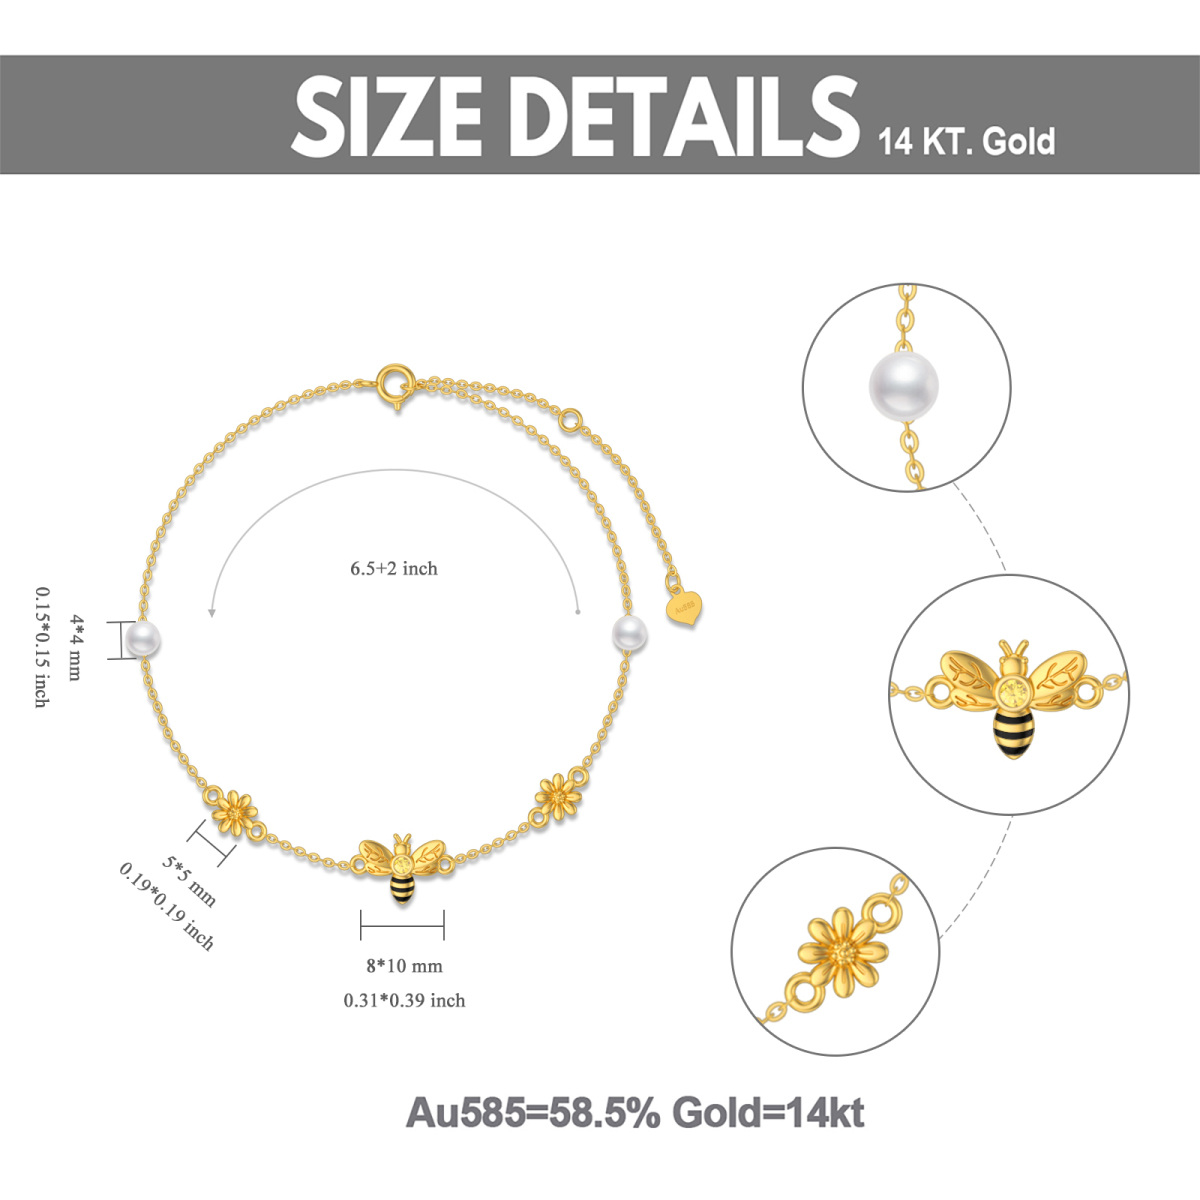 Pulsera de oro de 14 quilates con colgante de perlas, abeja y margarita-6